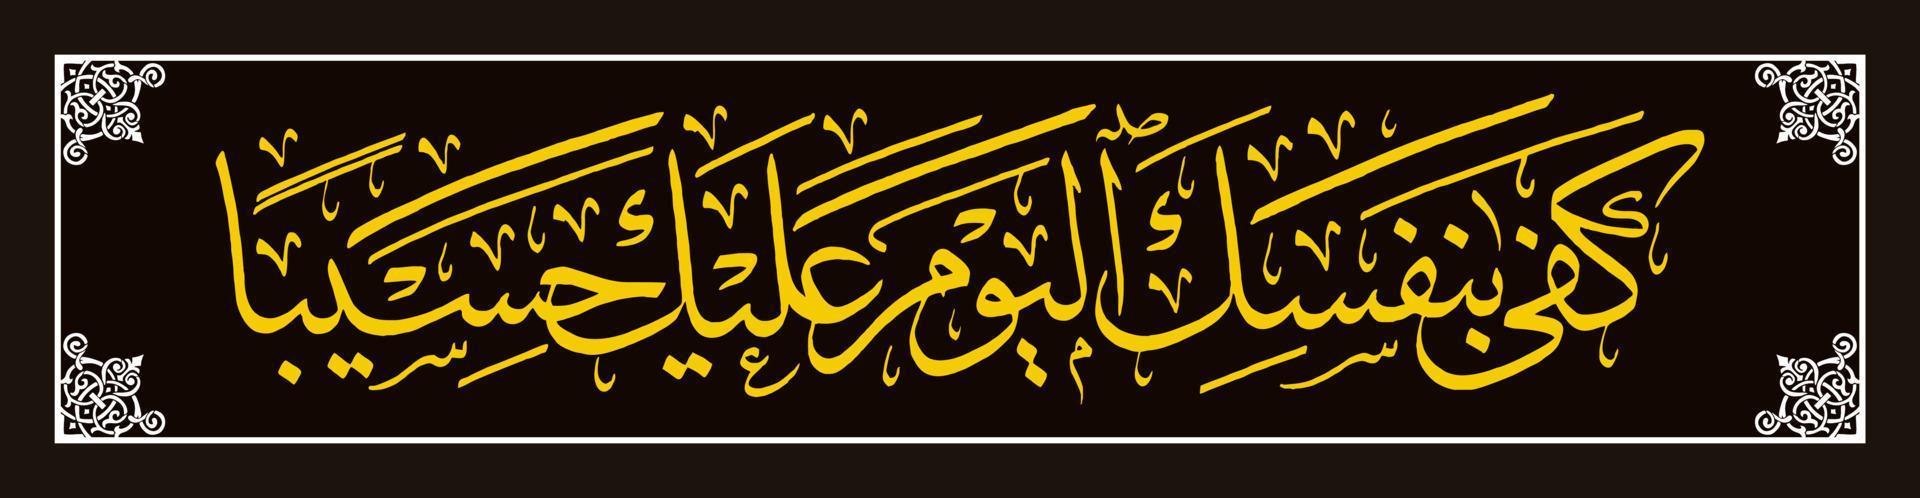 caligrafía árabe, al qur'an surah al isra 14, tradúzcase lo suficiente hoy como su contador. vector